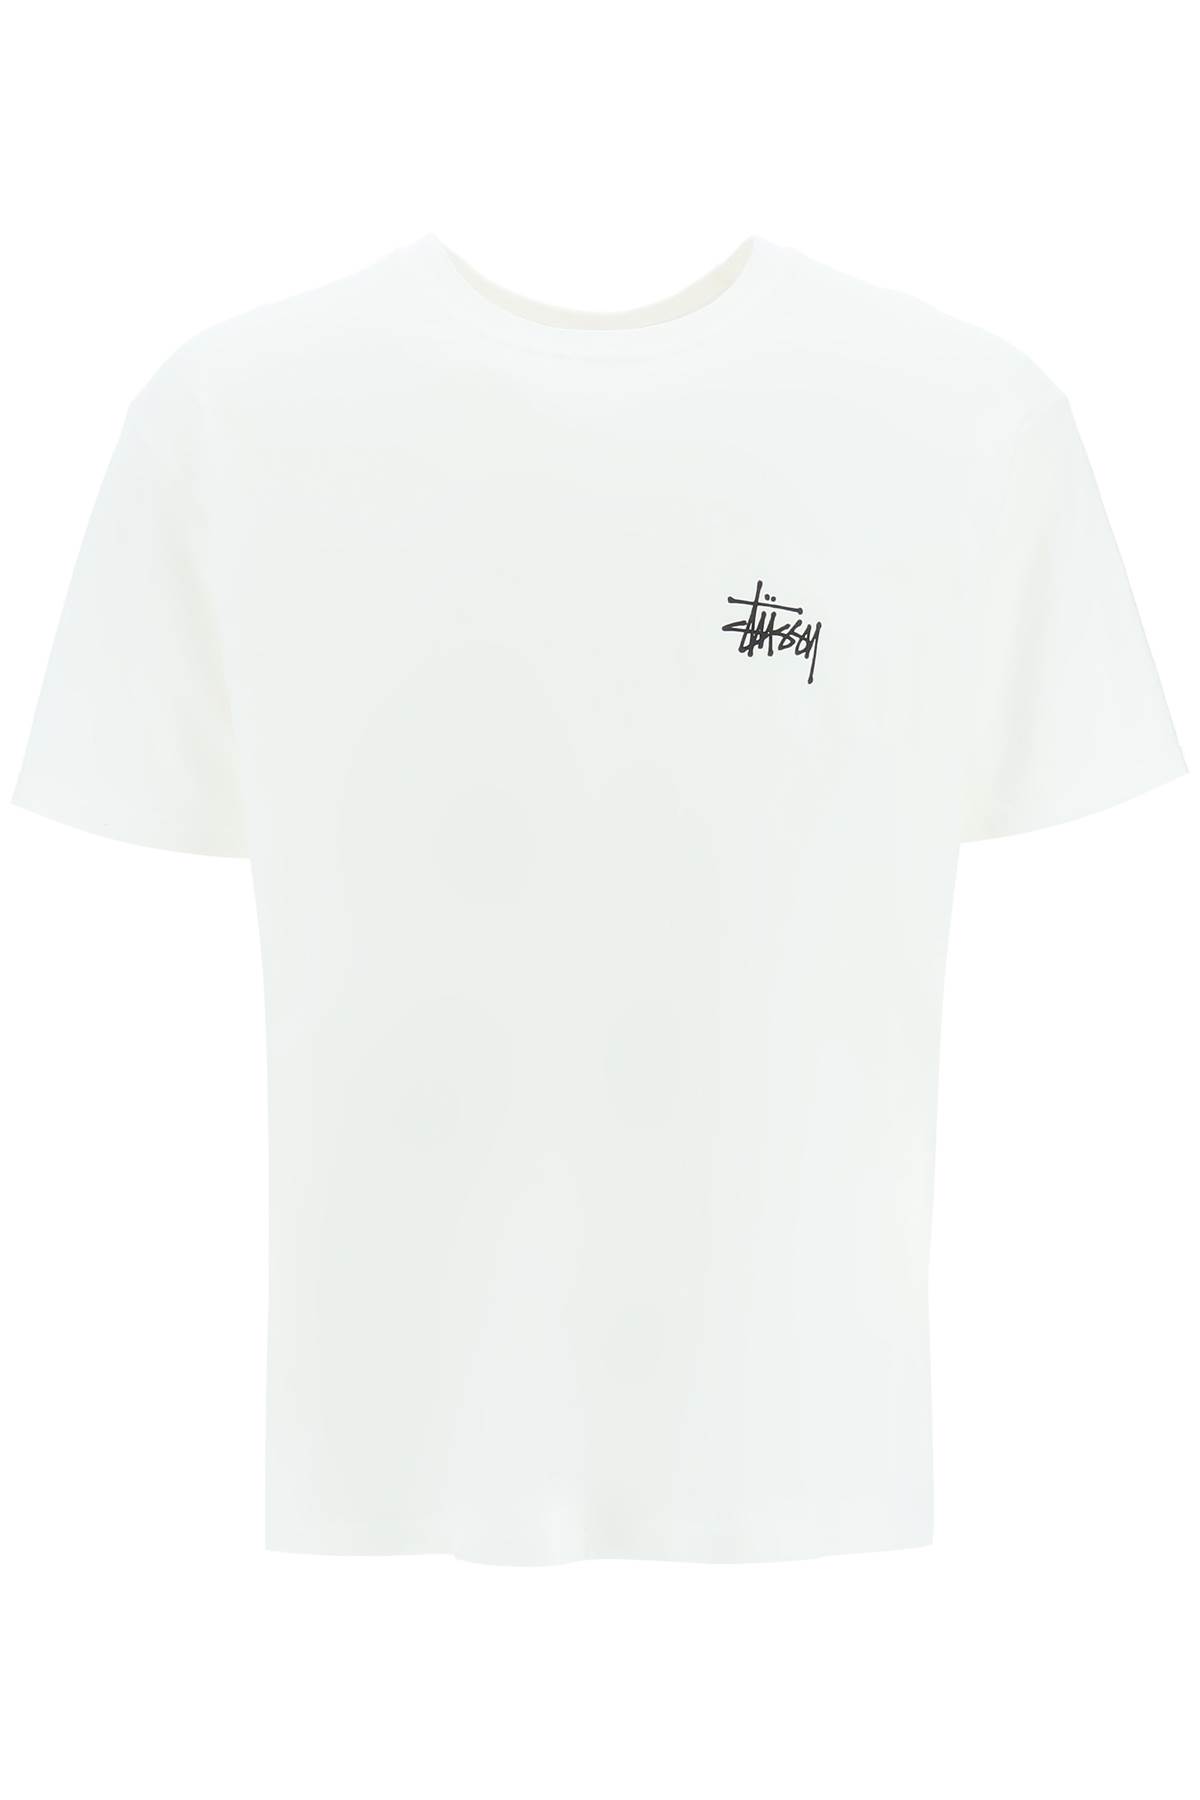 Stussy Logo Print T-shirt